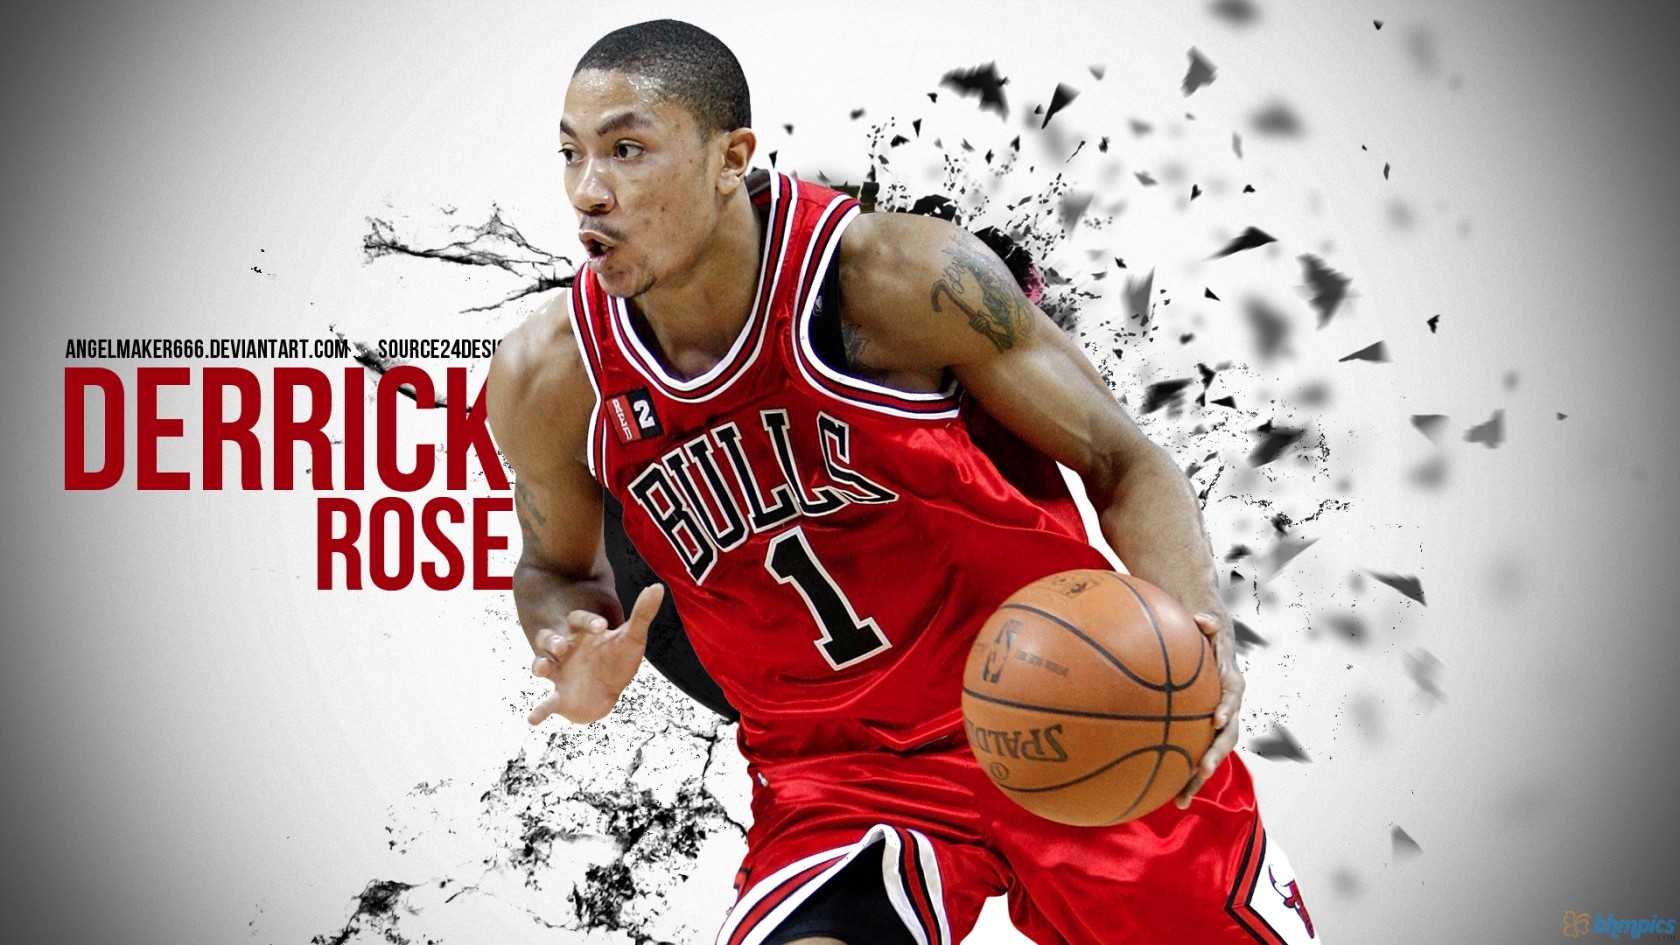 Derrick Rose Chicago Bulls HD Wallpaper of Sports   hdwallpaper2013